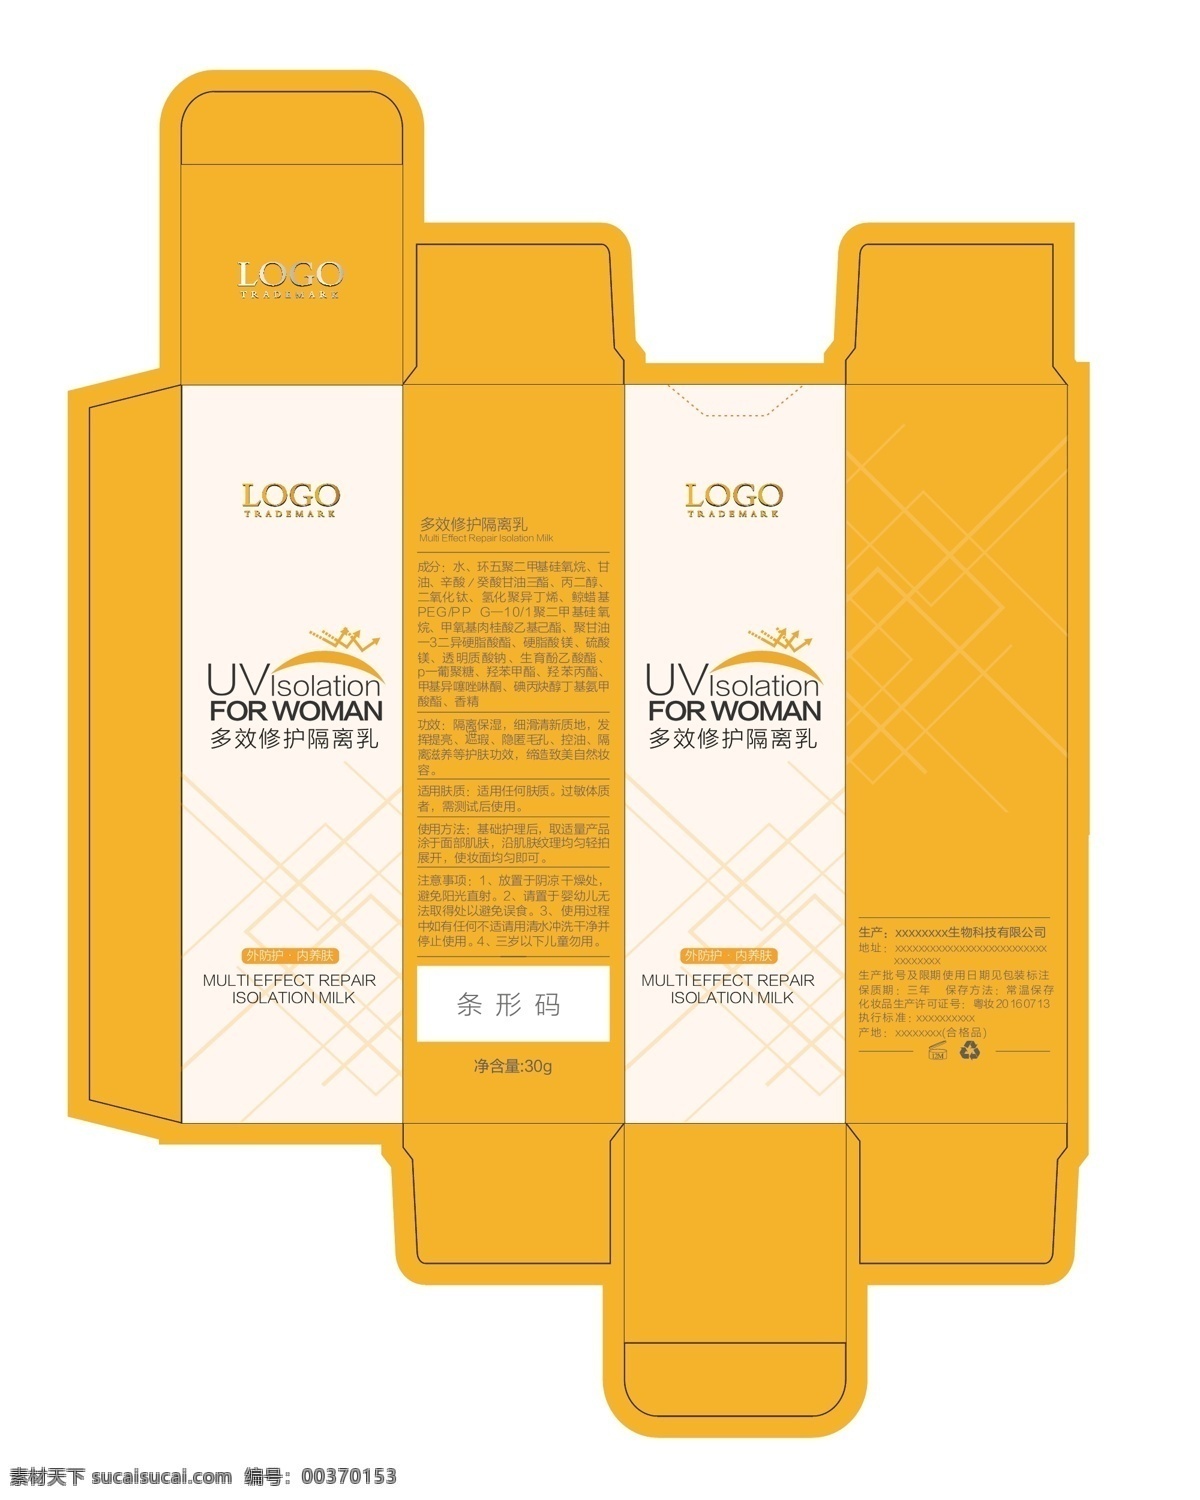 产品包装设计 隔离乳 外包装盒子 防御 隔离 盒子设计 简约 化妆品 护肤 可编辑 美容护肤 个人护理 包装设计